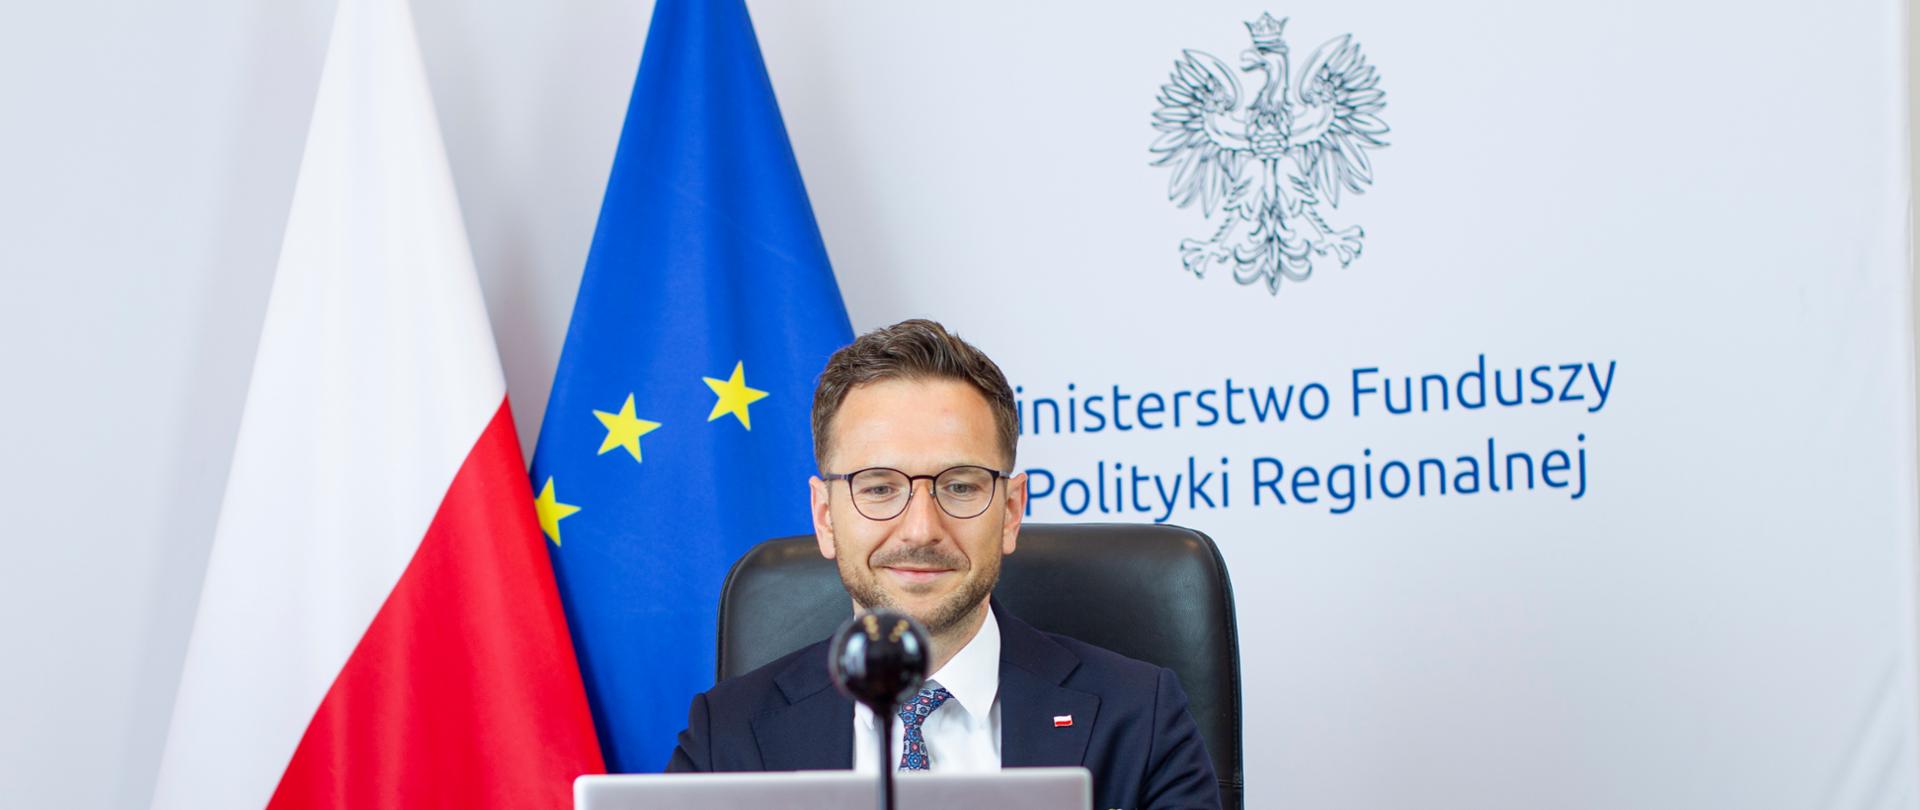 Wiceminister Waldemar Buda siedzi przy biurku, przed laptopem. Za plecami tło z logo MFiPR oraz flagi Polski i UE.